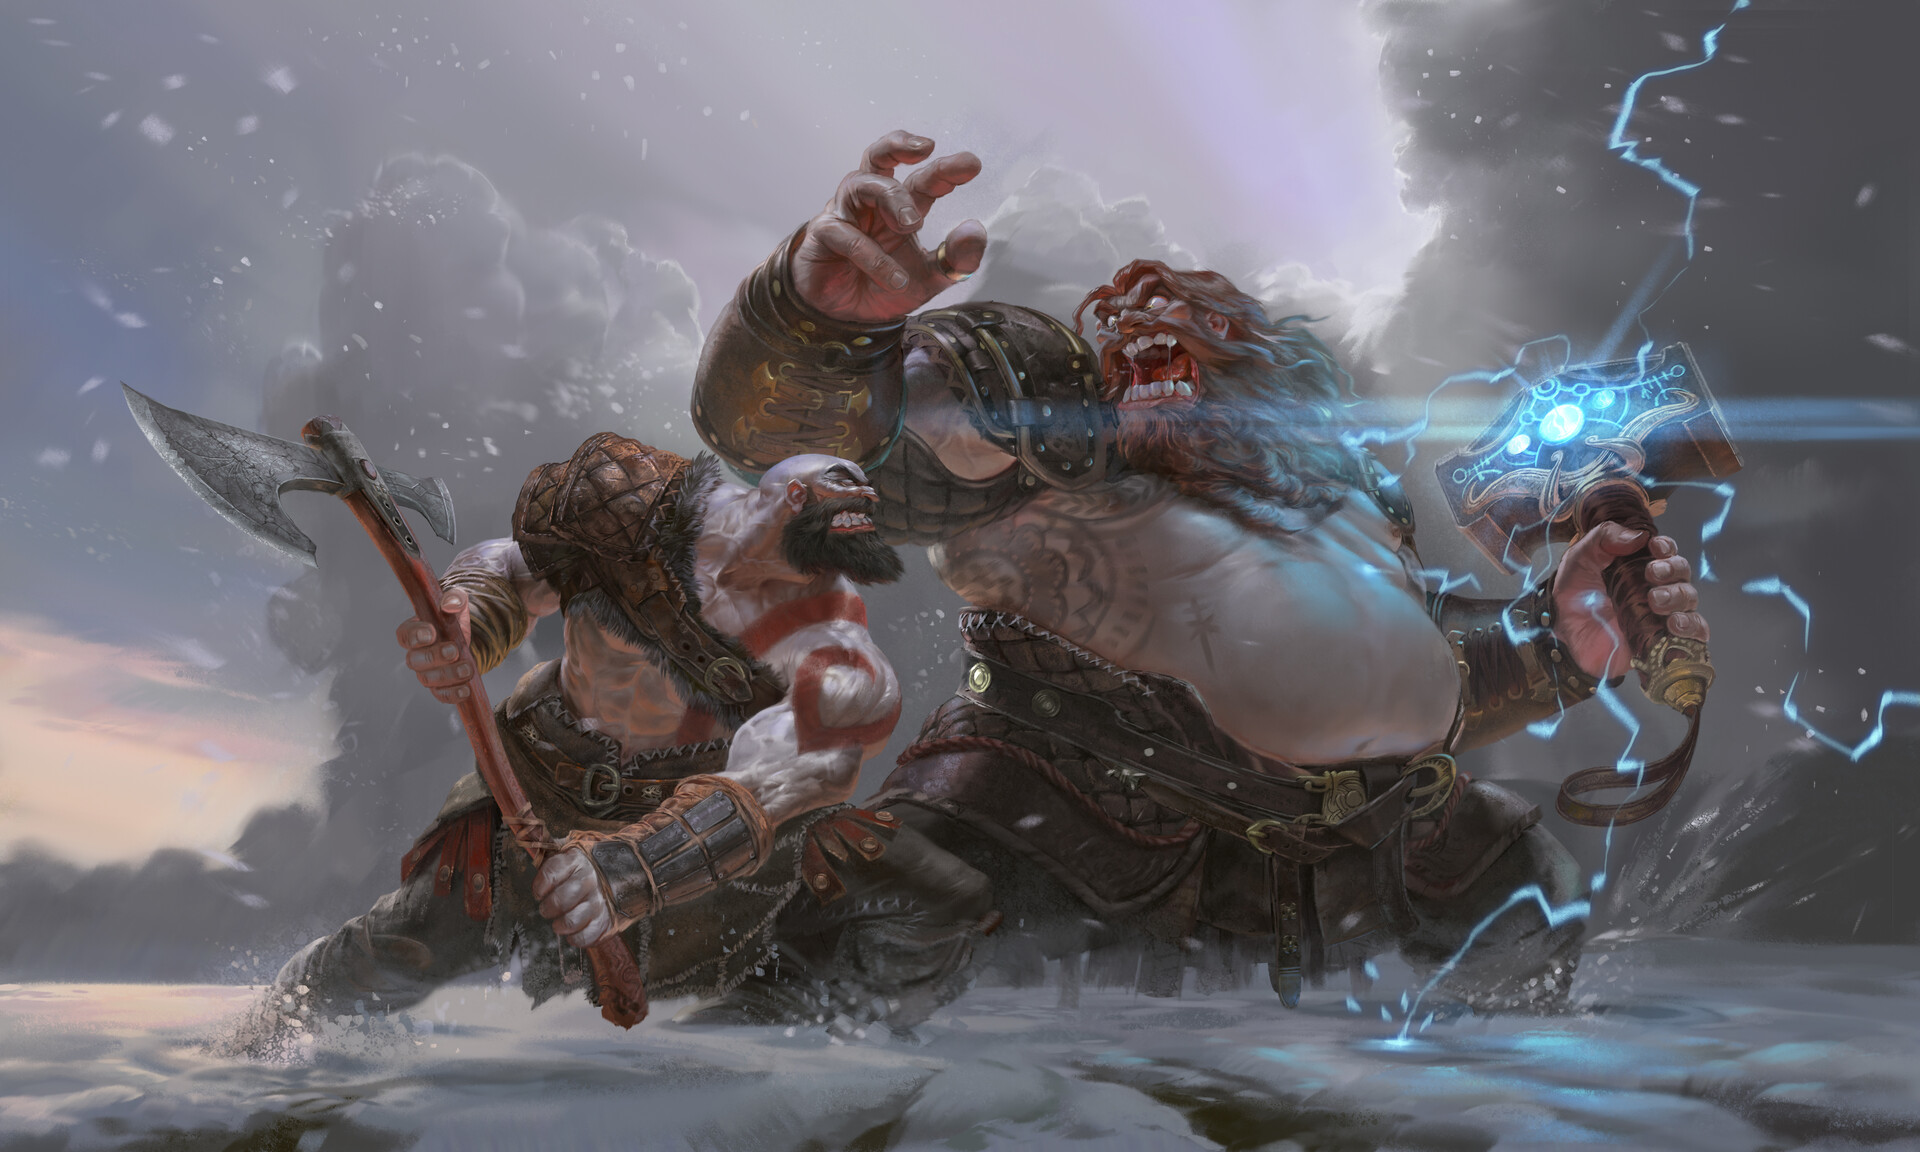 Kratos vs Thor by Eslam AboShady